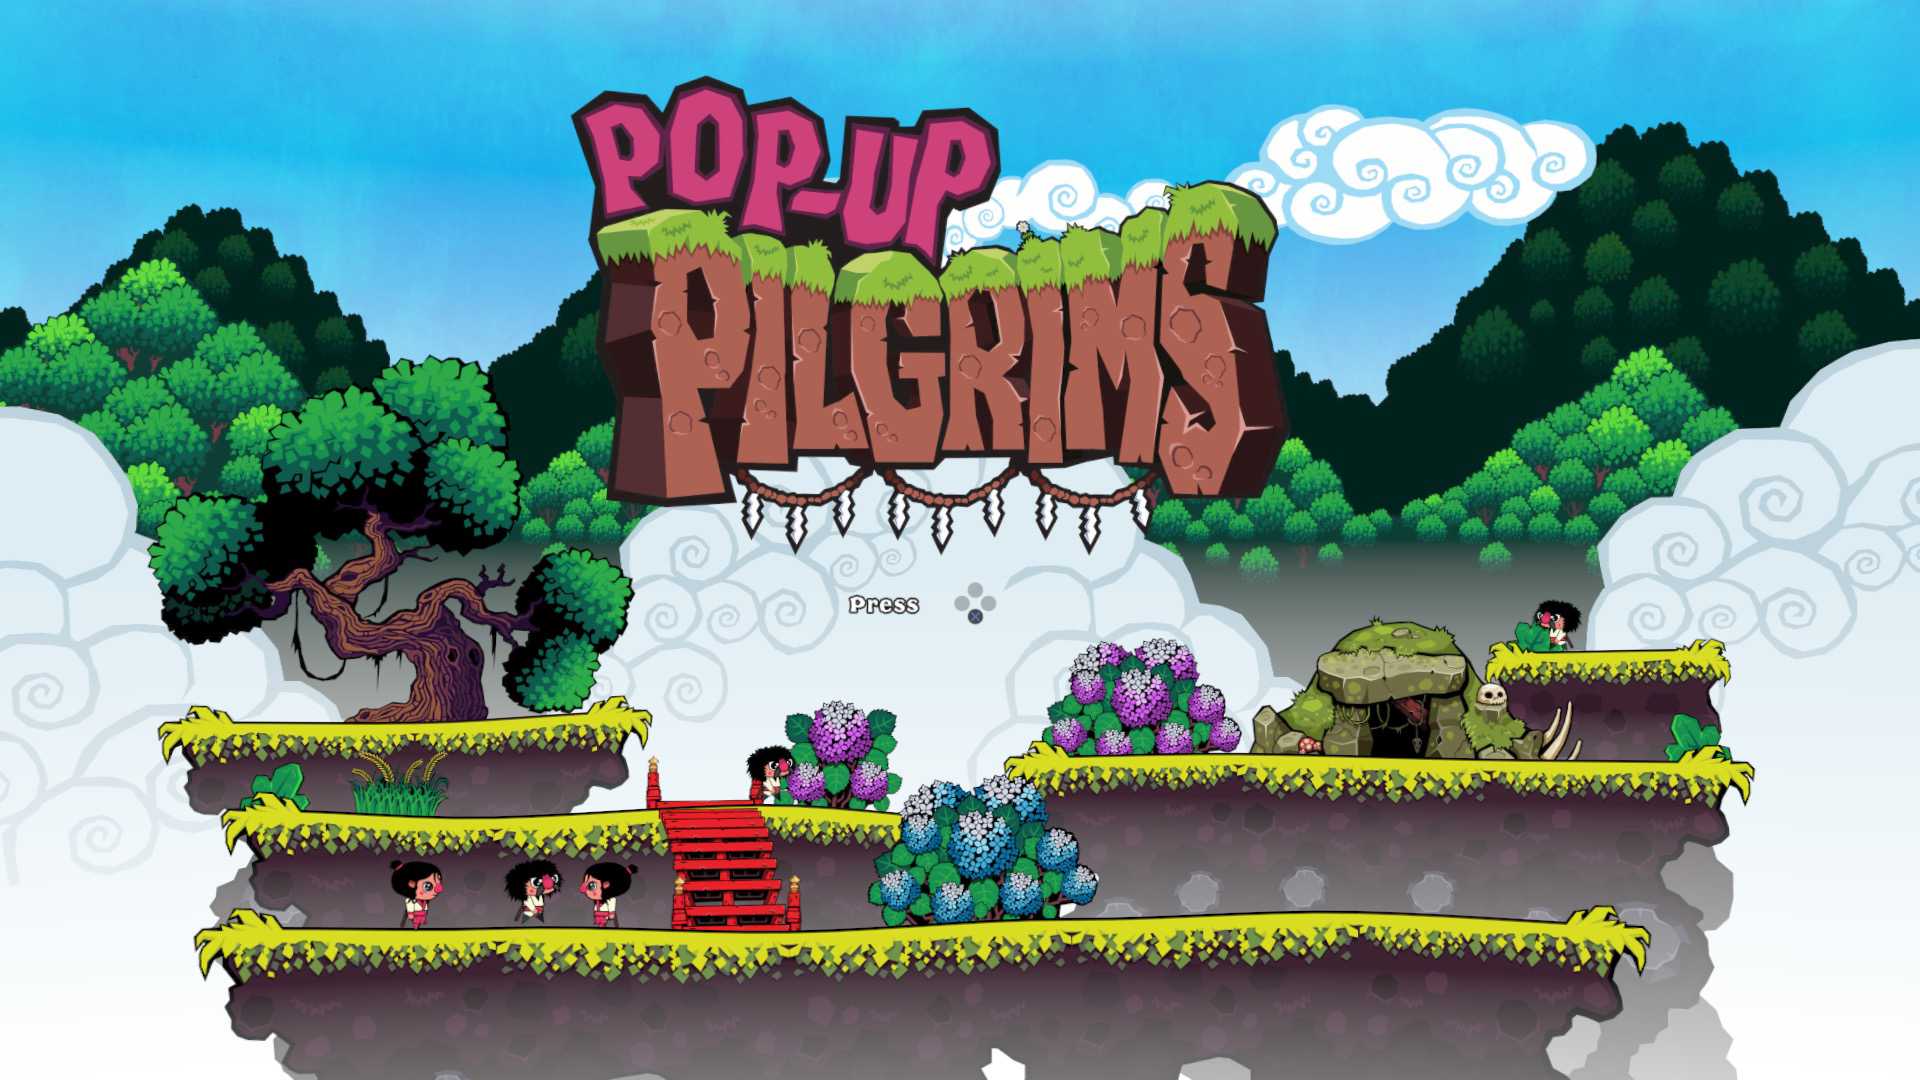 Pop-Up Pilgrims, un plataformas 2D llega esta semana a PlayStation VR